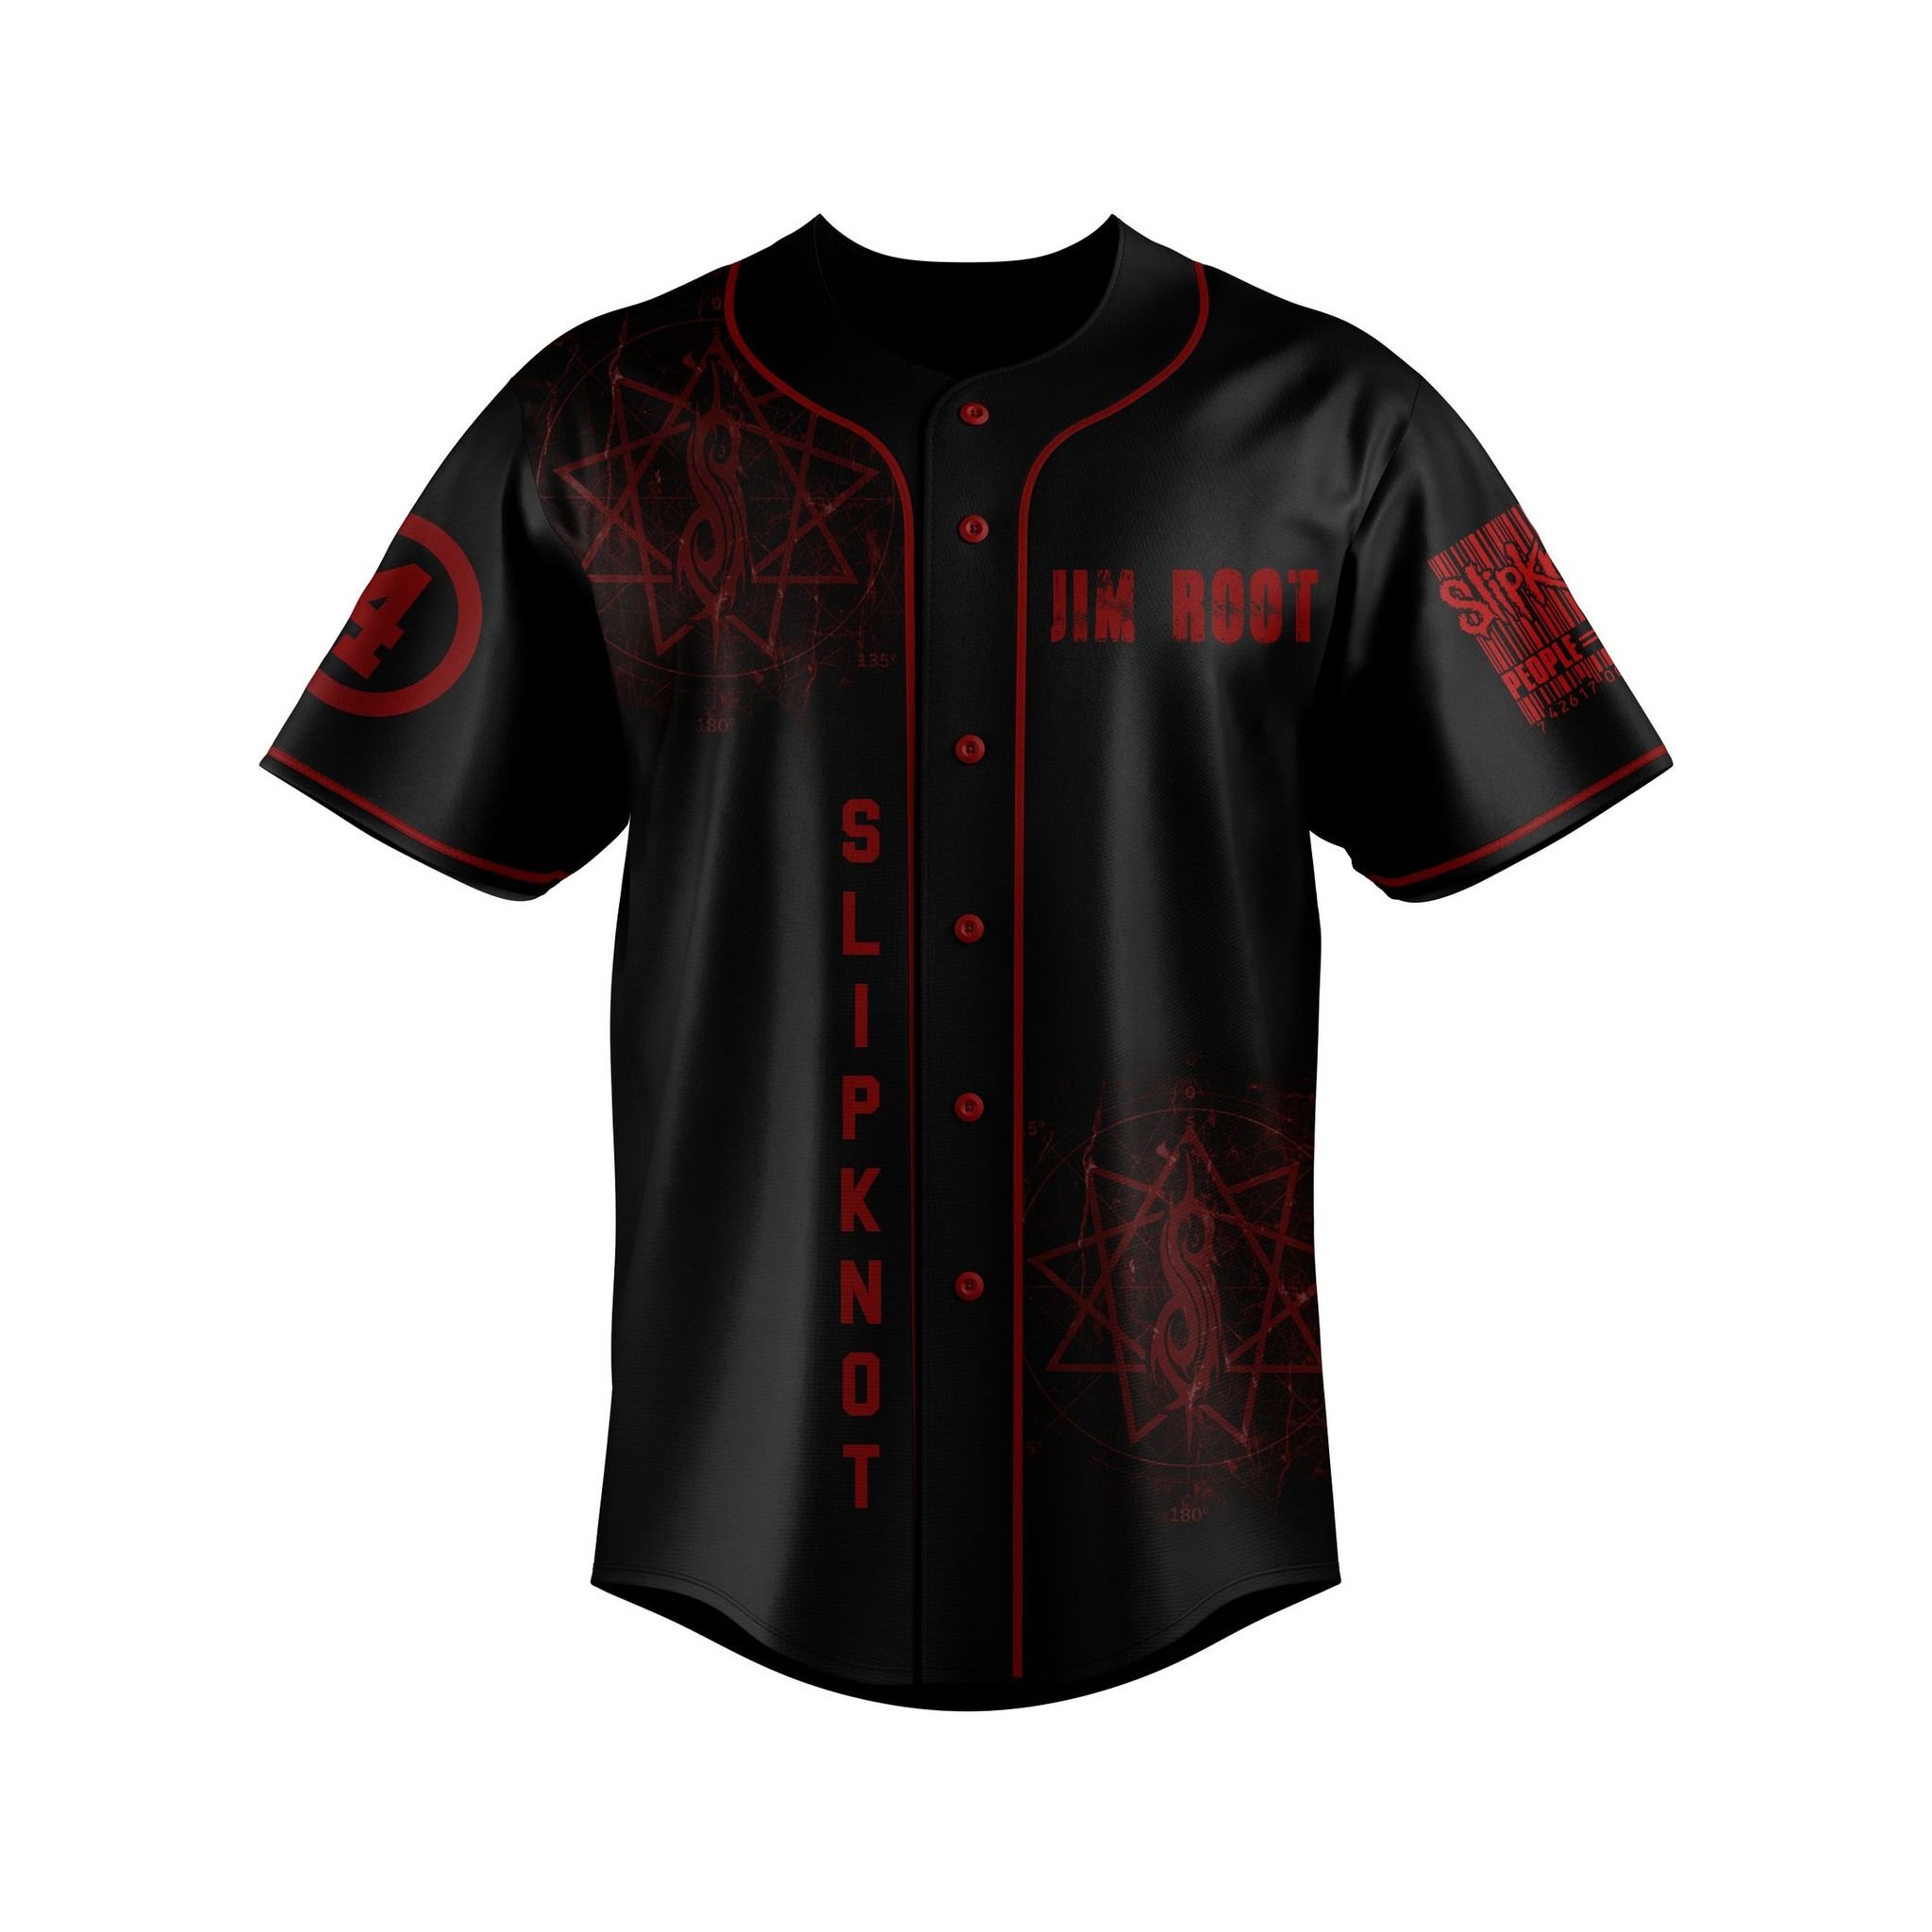 Slipknot custom name baseball jersey 2